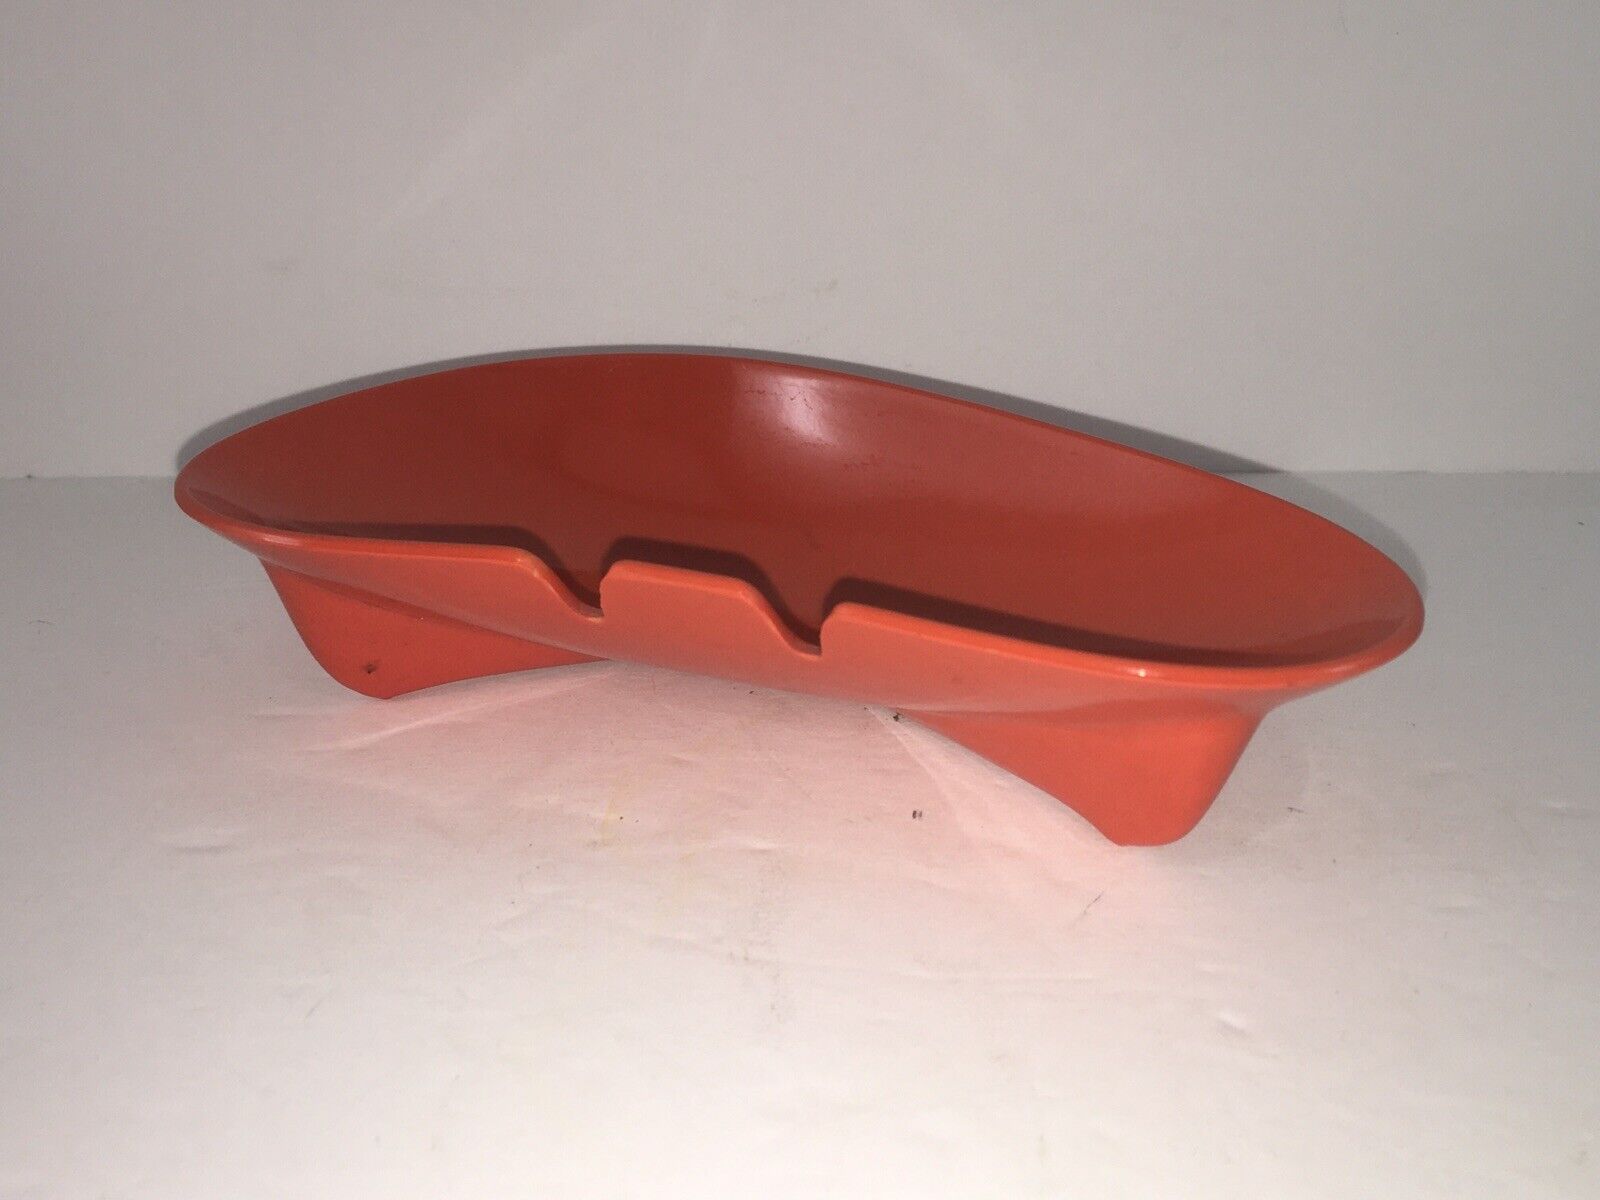 Vintage MCM Orange Plastic Boomerang Ashtray 6 1/2” Long Styled By Kaye LaMoyer?